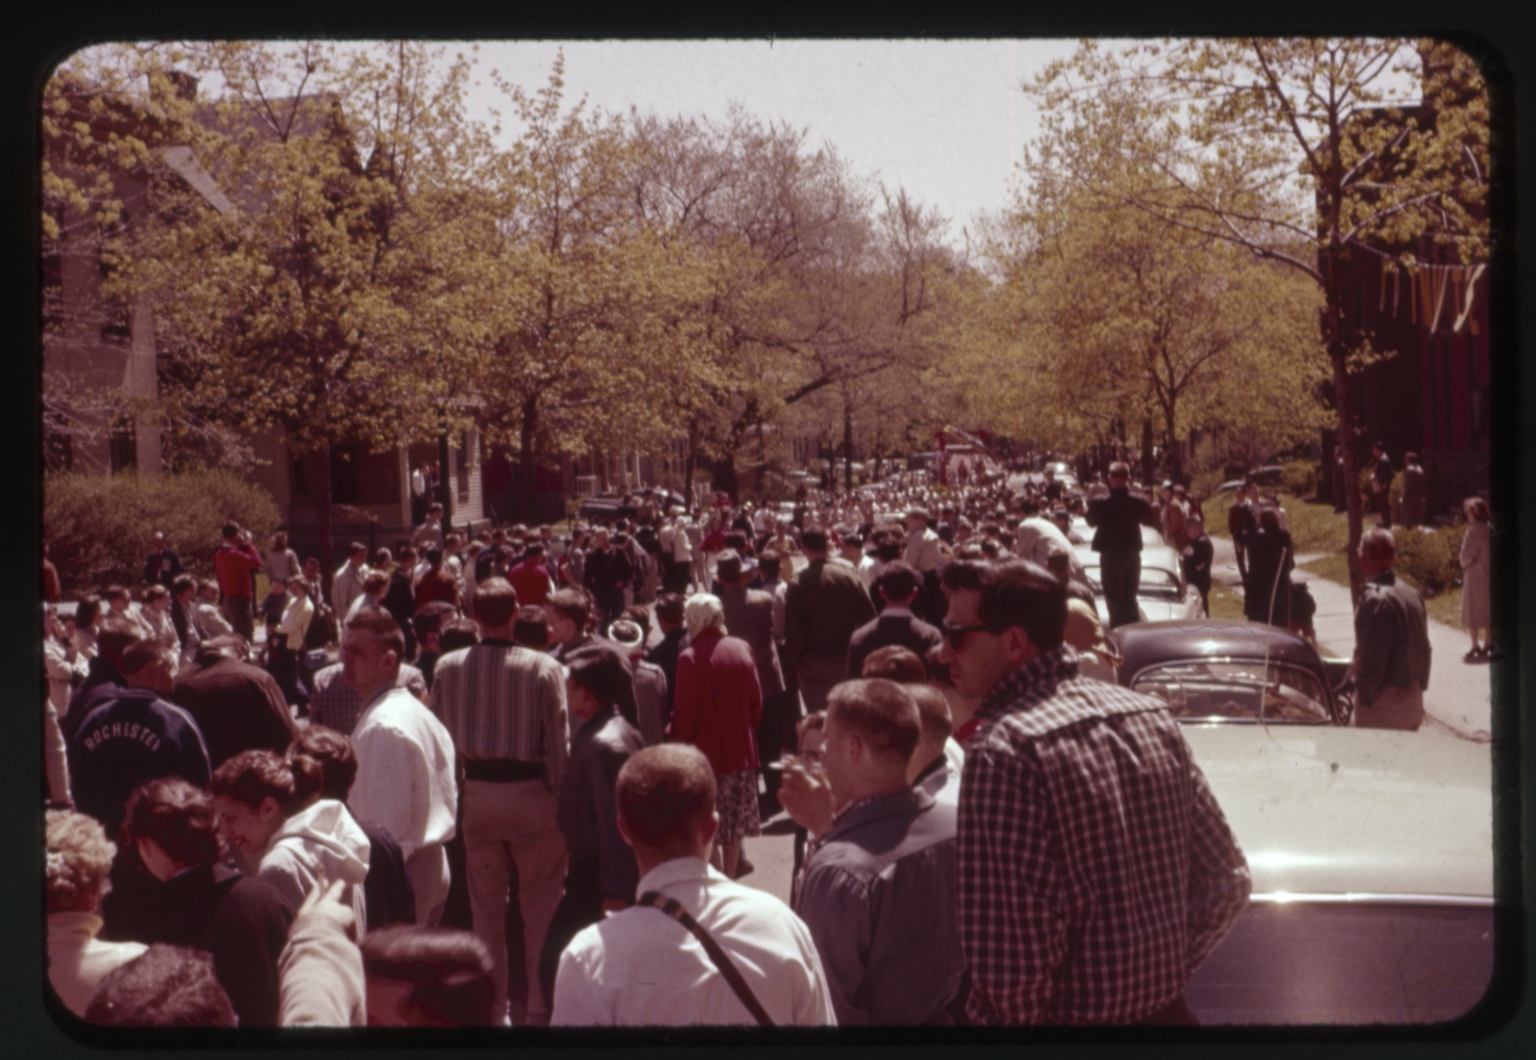 Spring Weekend 1963